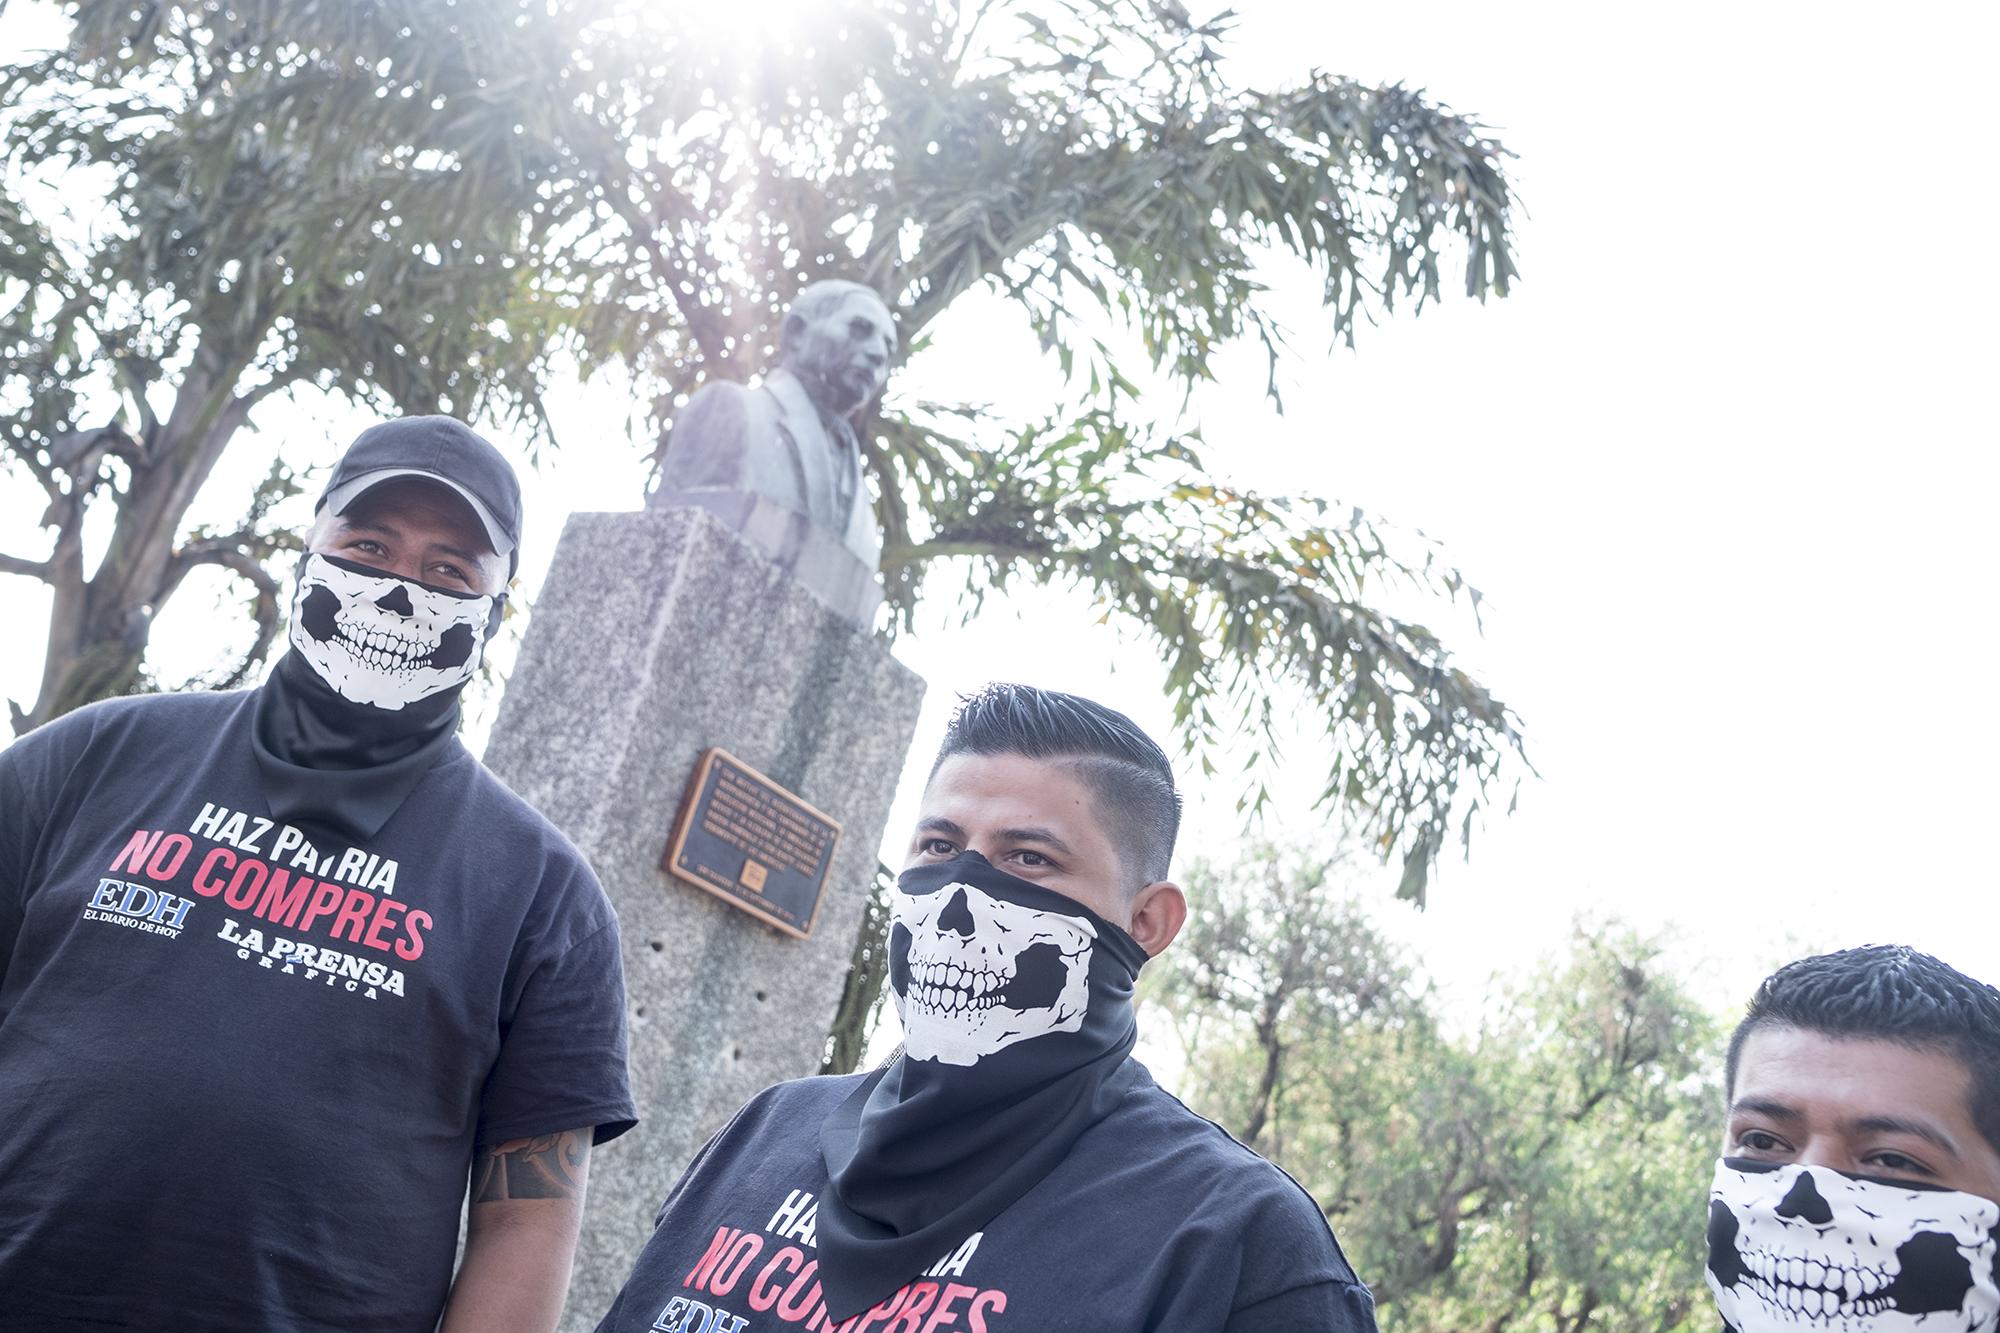 La marcha de la Universidad de El Salvador fue convocada a las 8:30 a.m. del miércoles 20. En la imagen, tres jóvenes esperan el inicio de la protesta. Foto: Fred Ramos